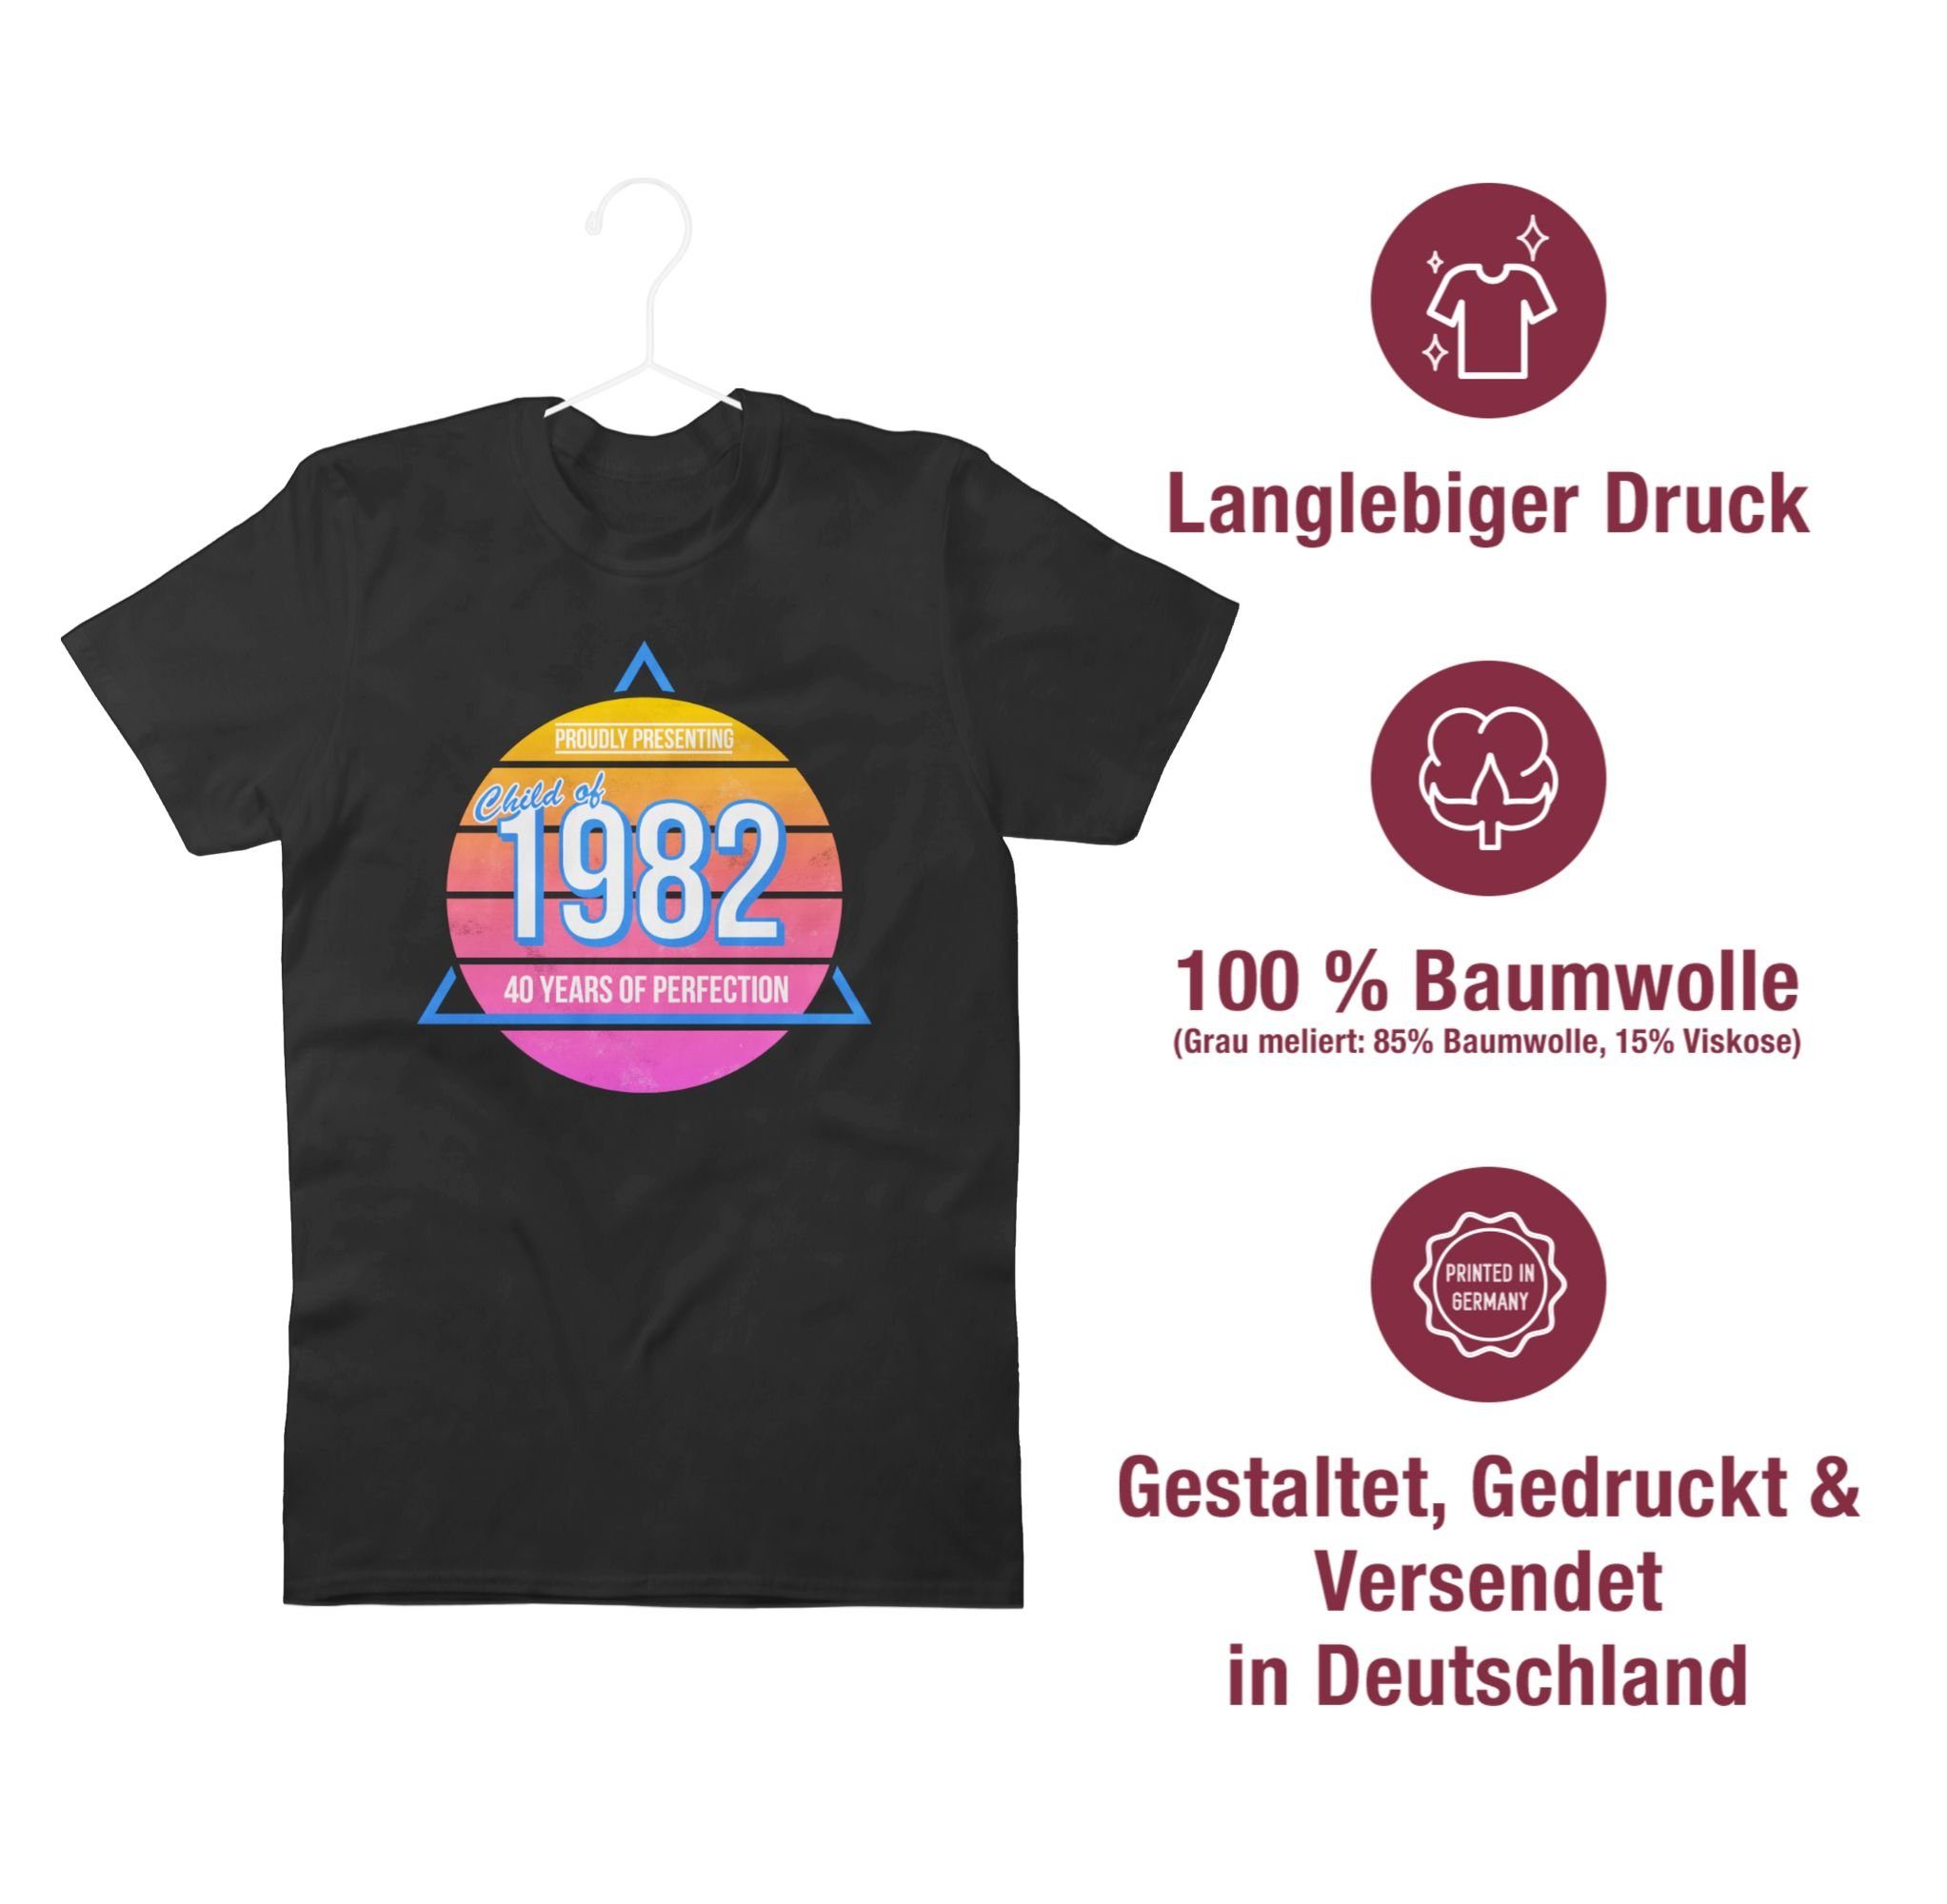 Shirtracer T-Shirt Child of Schwarz 1982 Vierzig Retro 1 Geburtstag 40